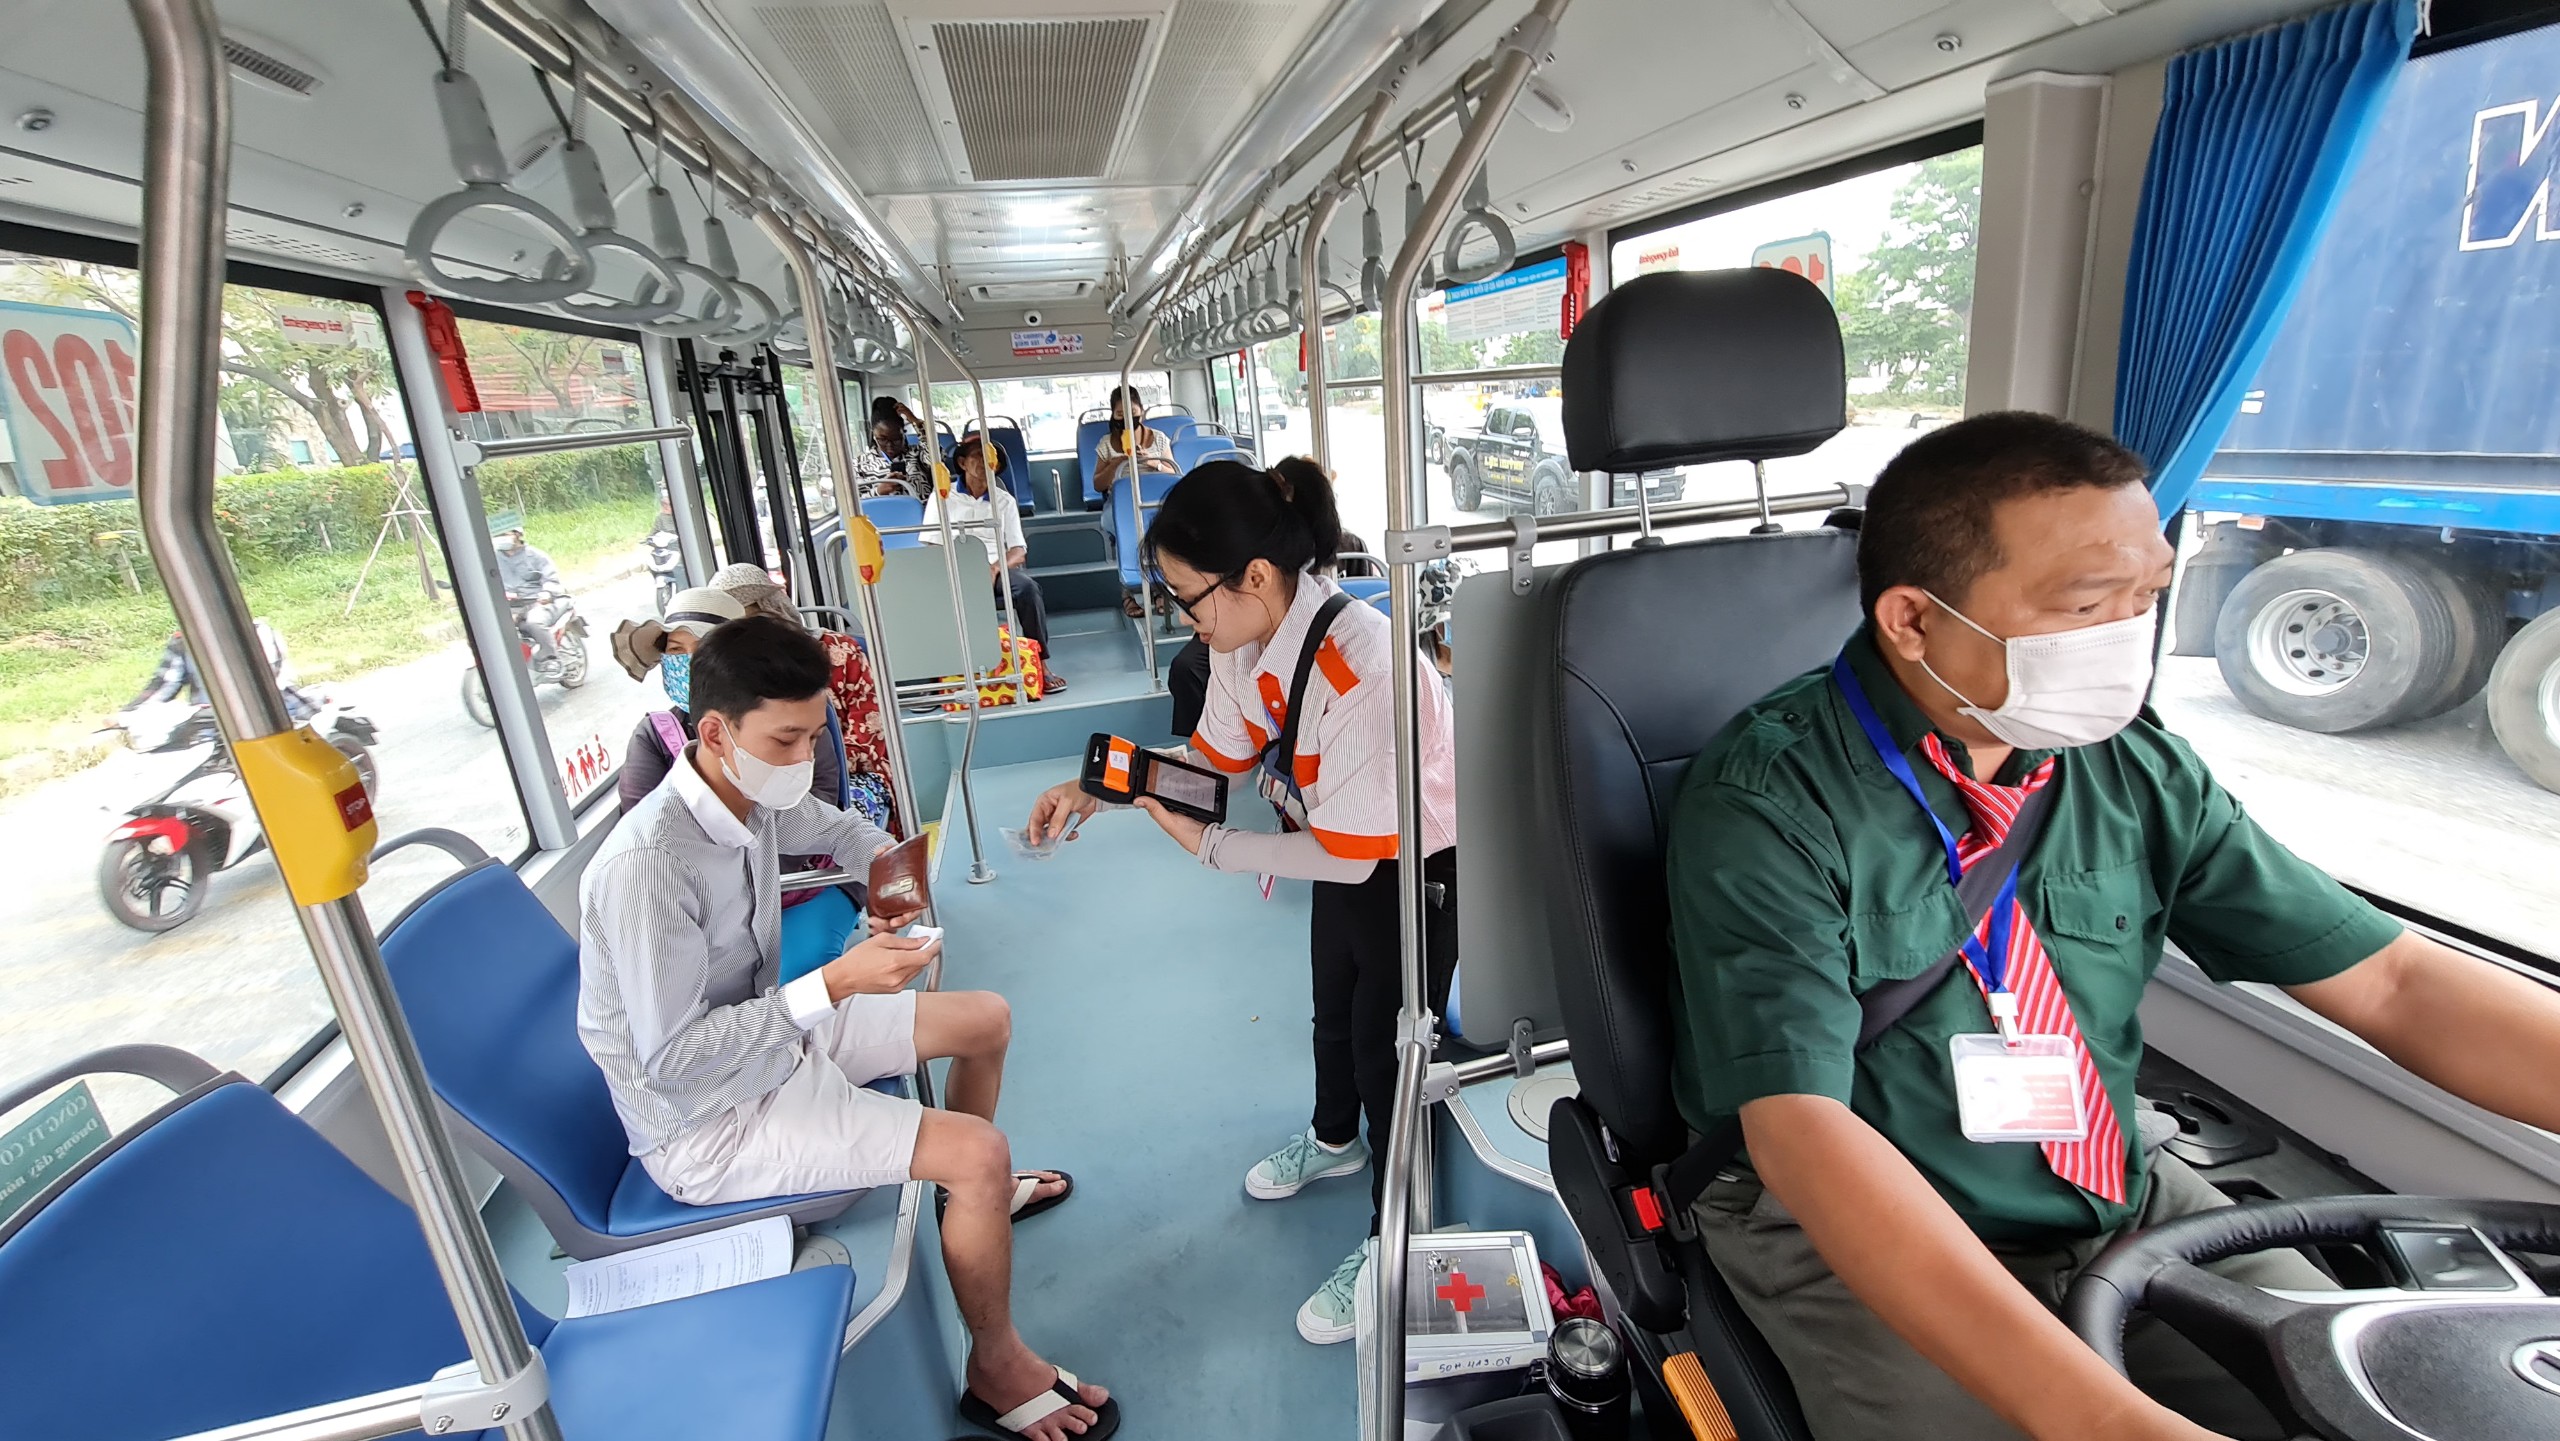 Nội thất xe buýt mã số tuyến 102: Bến xe buýt Sài Gòn - Nguyễn Văn Linh - Bến xe Miền Tây, trông rất hiện đại